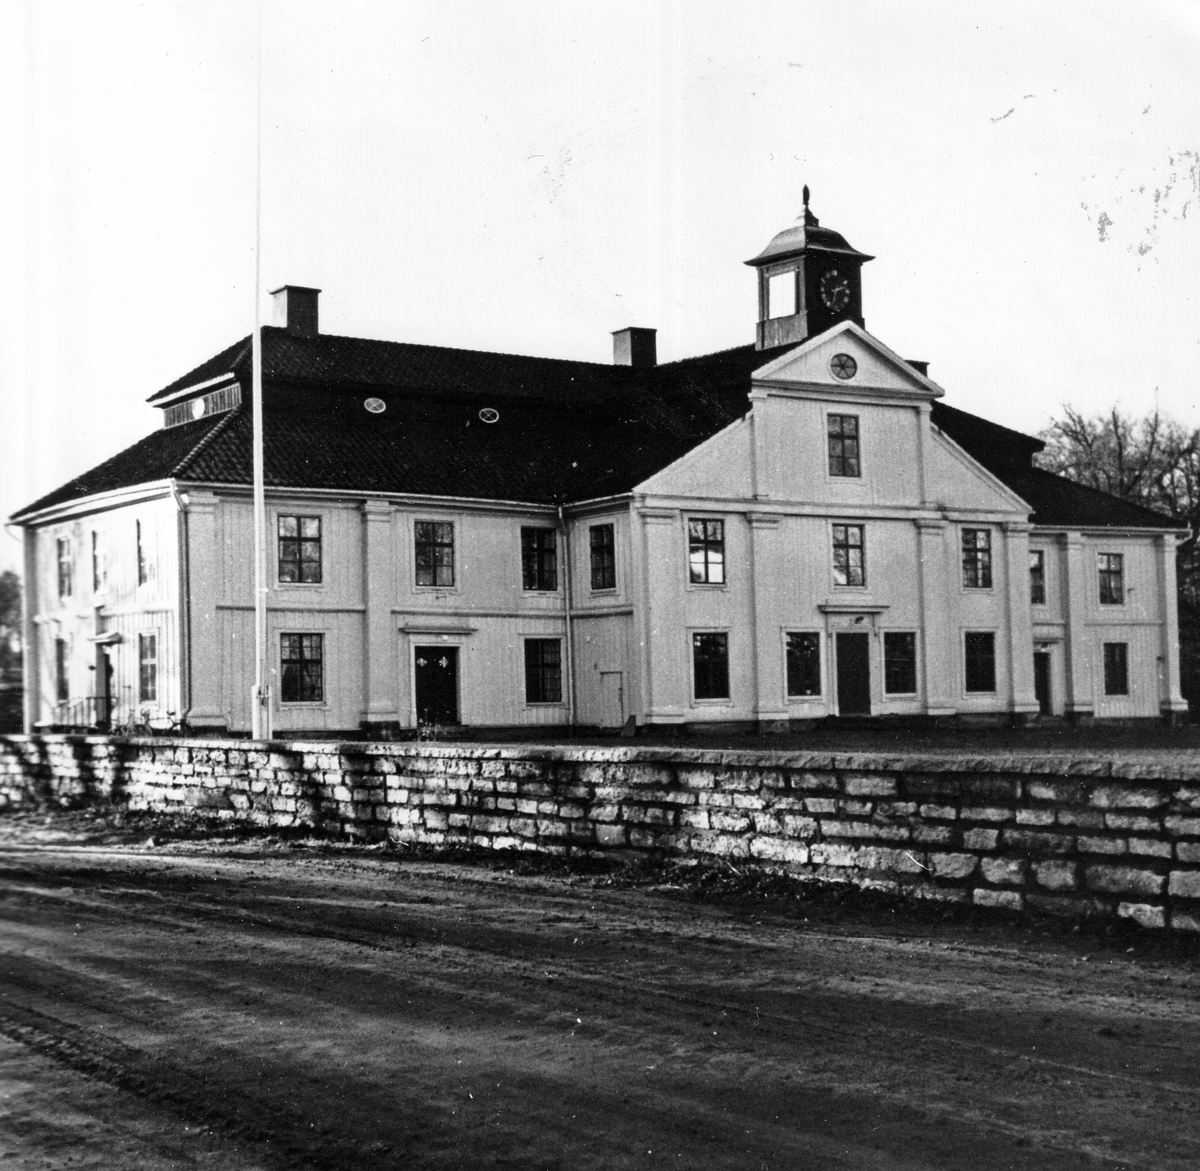 Klagstorps huvudbyggnad från nordost. Bebyggelseinventering på Skövde övningsfält 1963-1964.